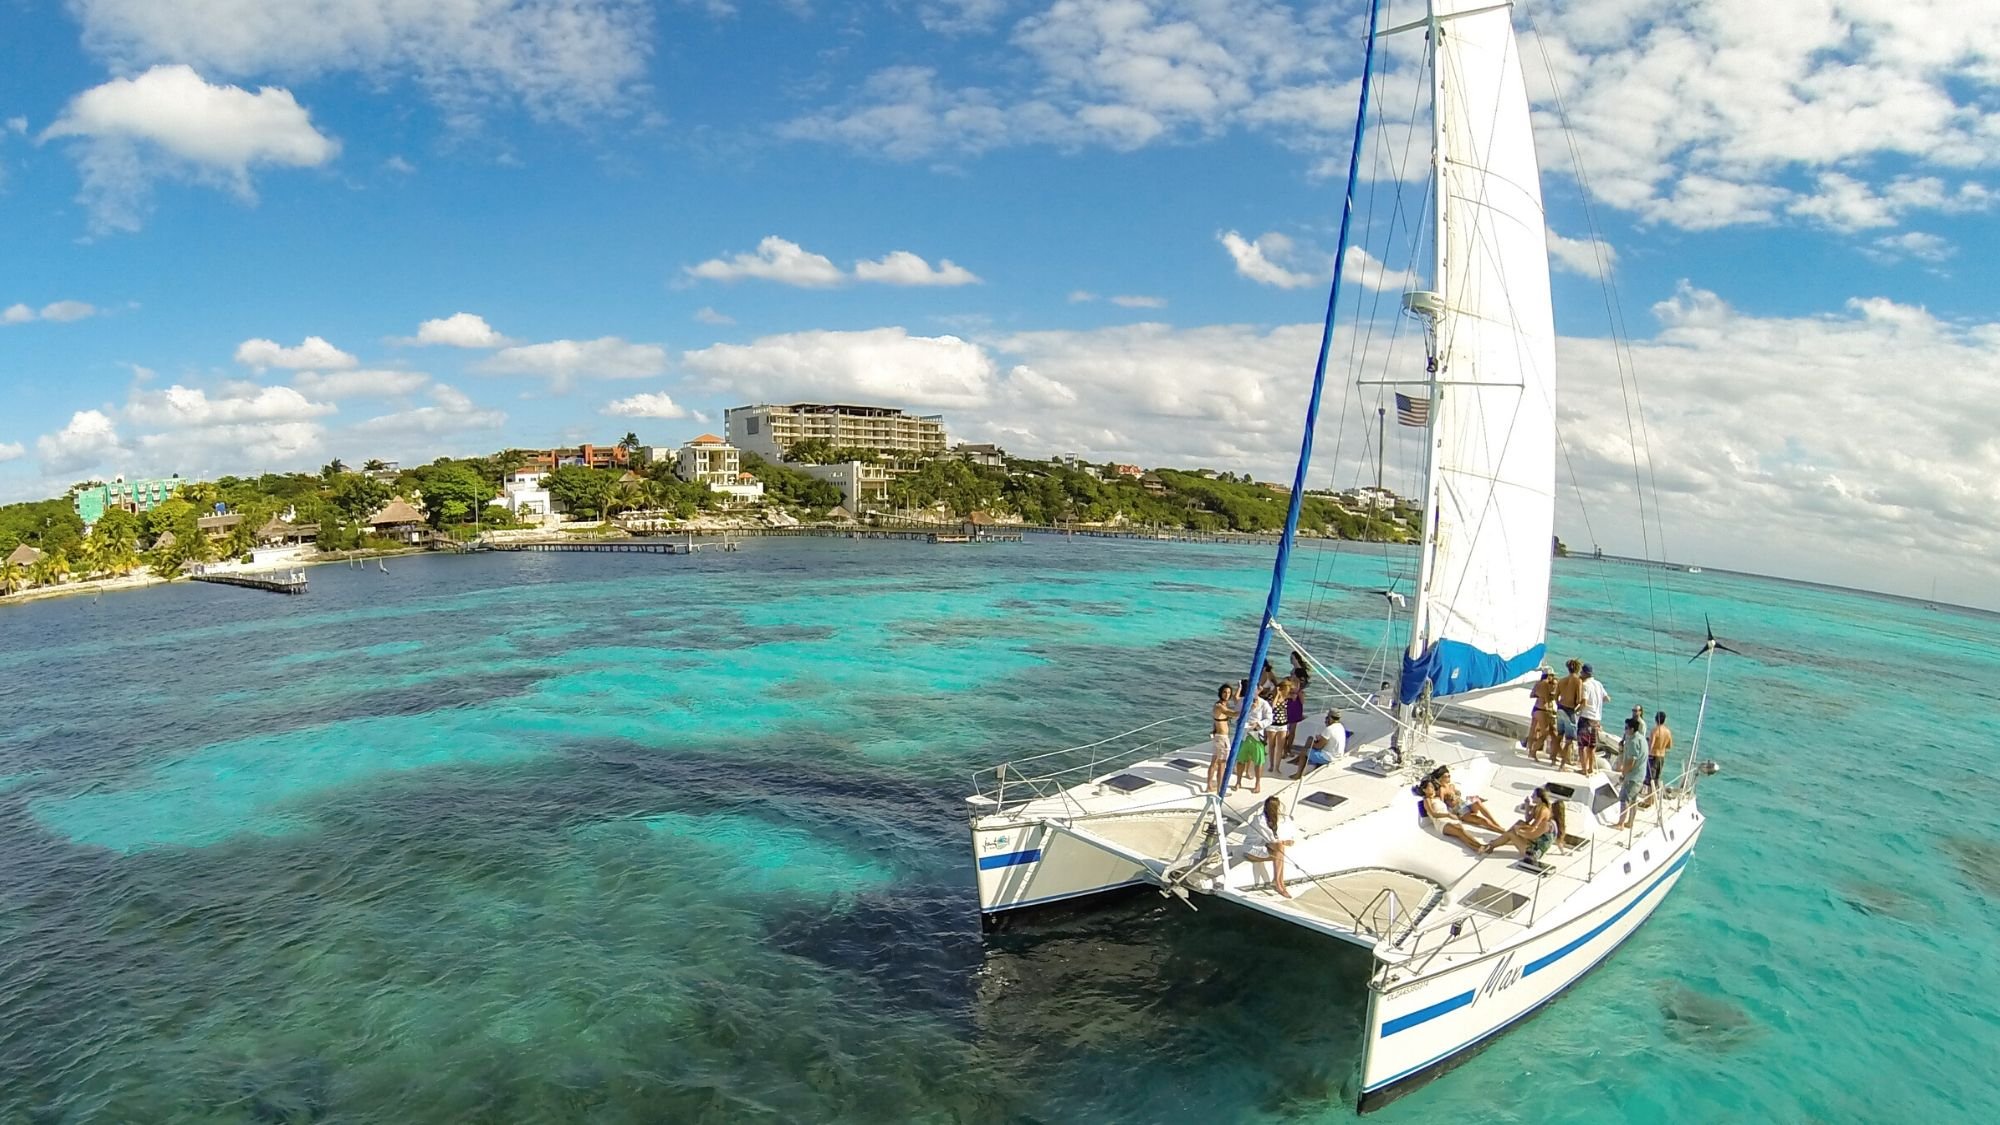 cuanto cuesta el catamaran de cancun a isla mujeres